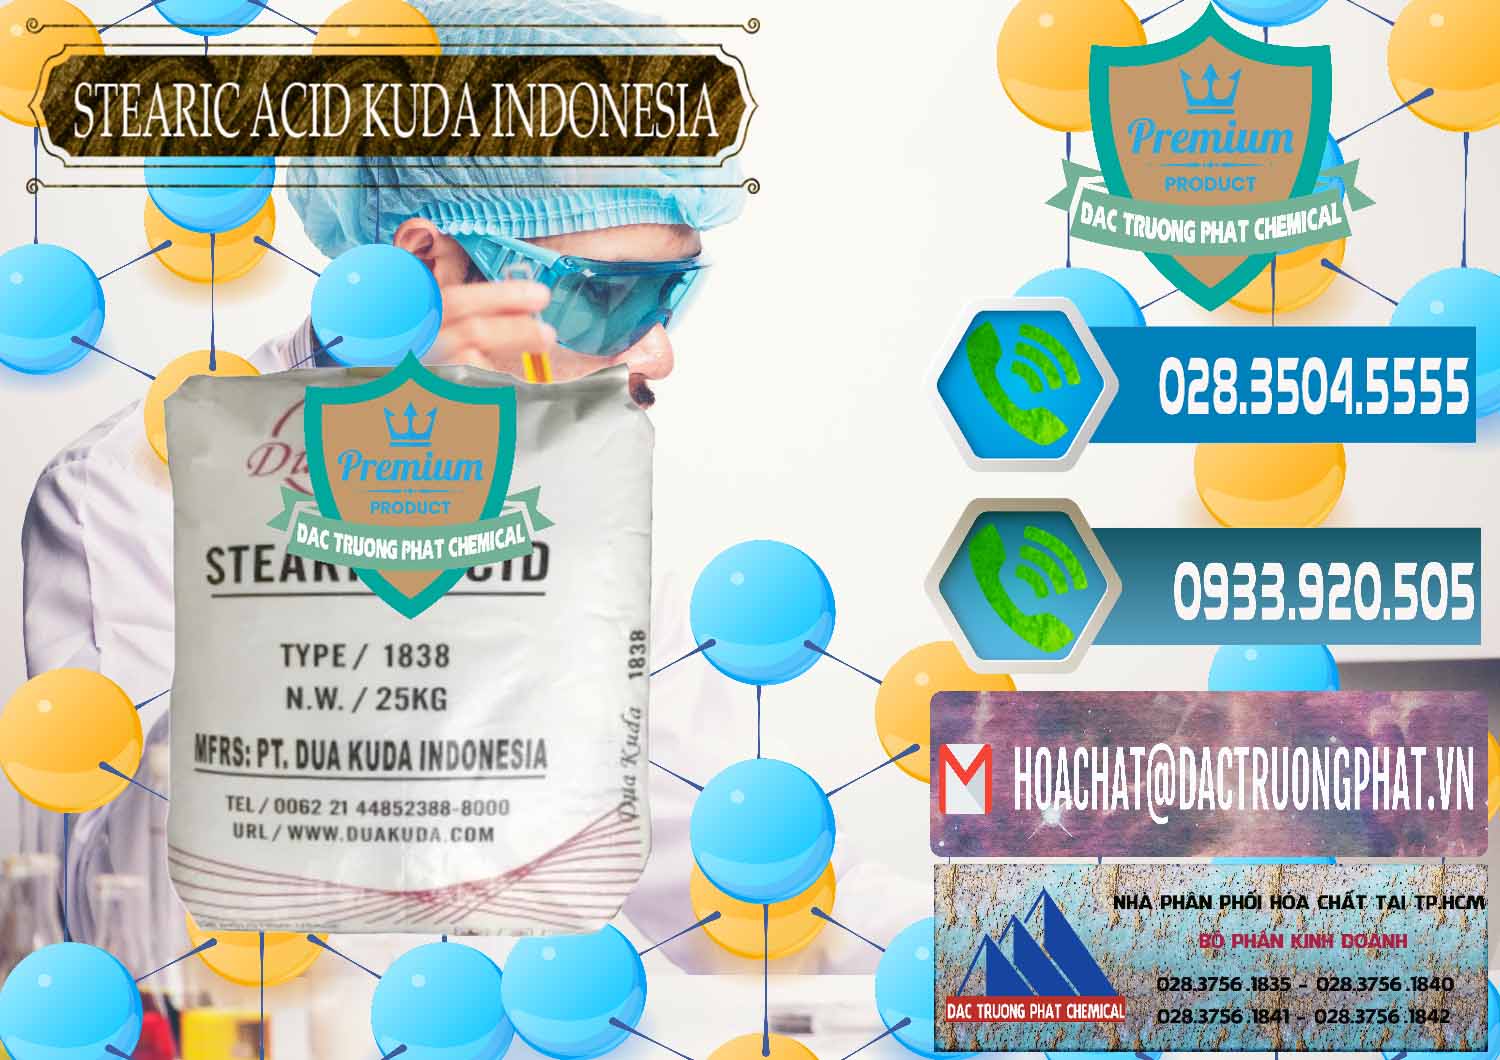 Cty chuyên kinh doanh và bán Axit Stearic - Stearic Acid Dua Kuda Indonesia - 0388 - Nơi cung ứng & phân phối hóa chất tại TP.HCM - congtyhoachat.net